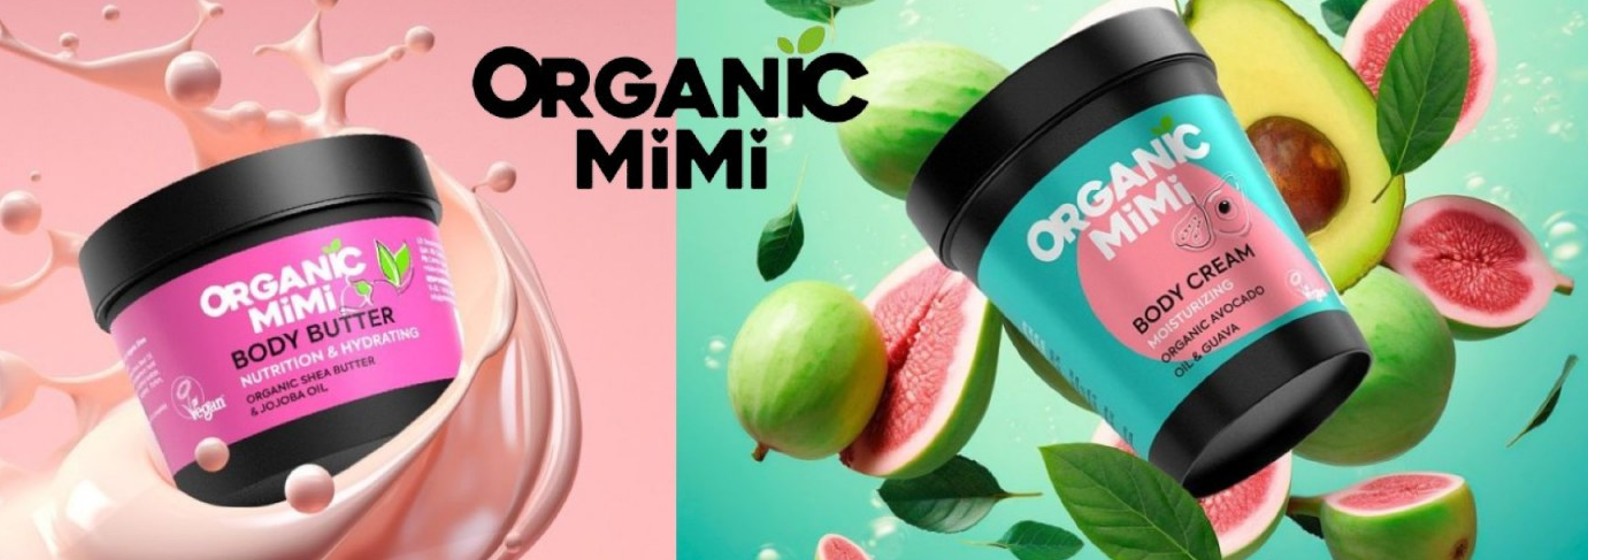 Organic Mimi